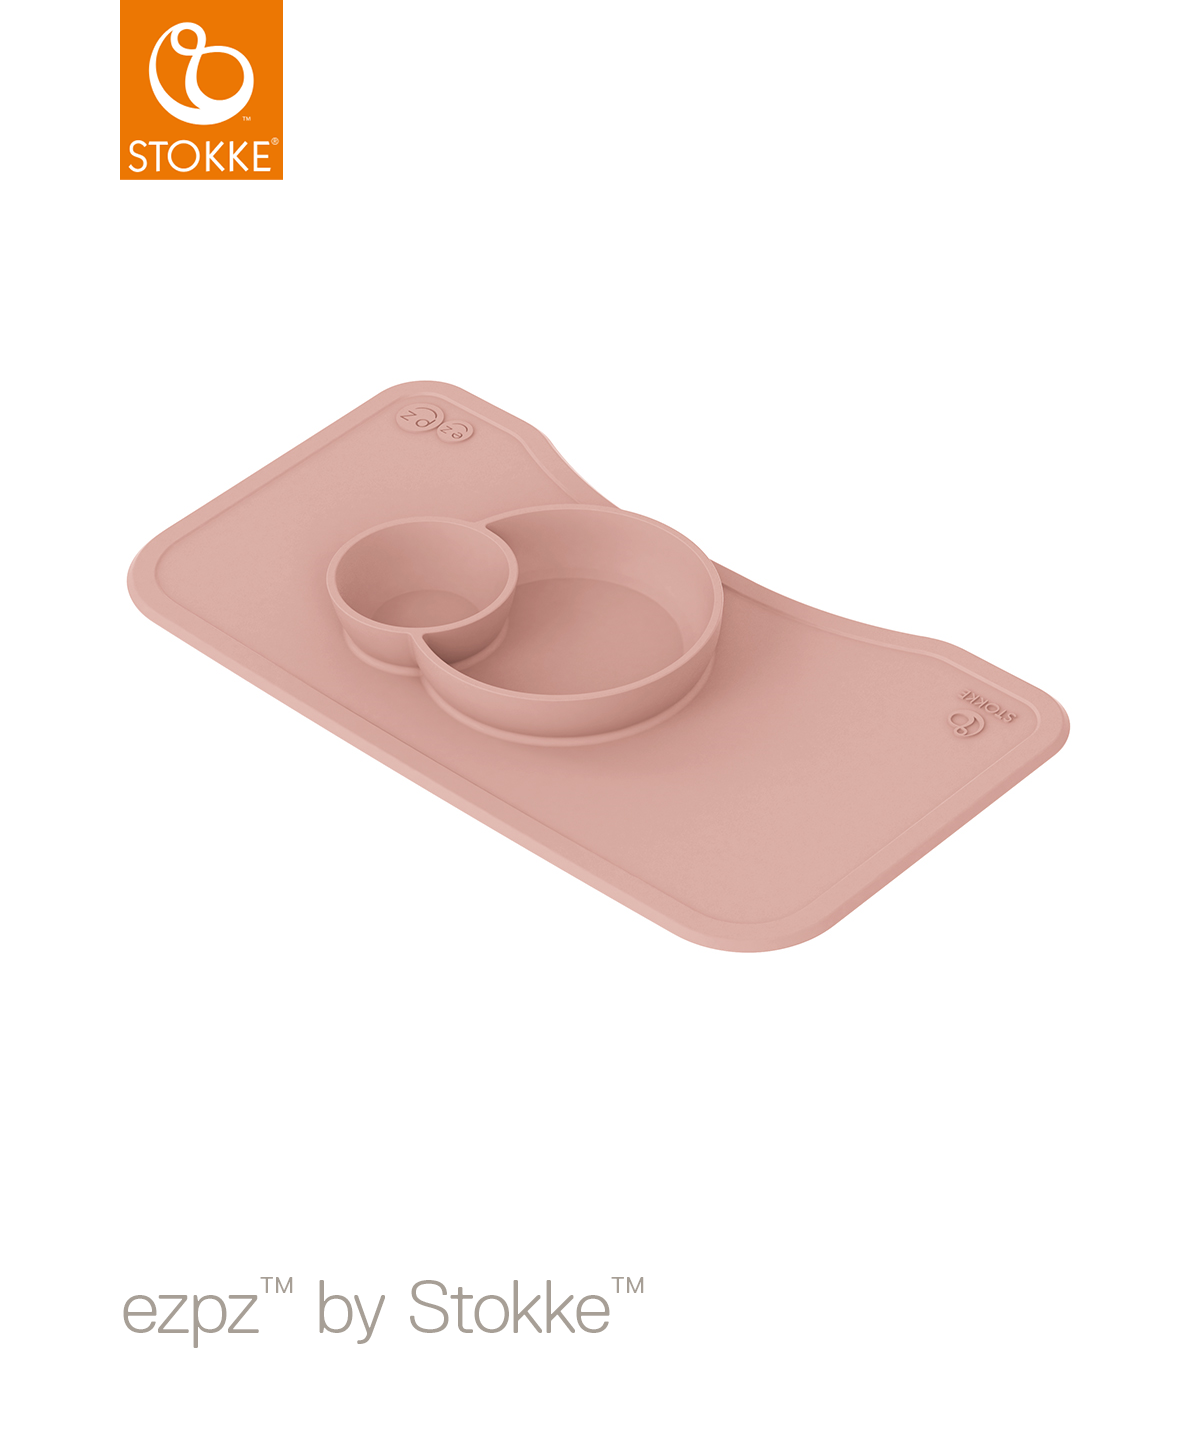 STOKKE Σουπλά ezpz™ by Stokke™ Για Δίσκο Steps Pink